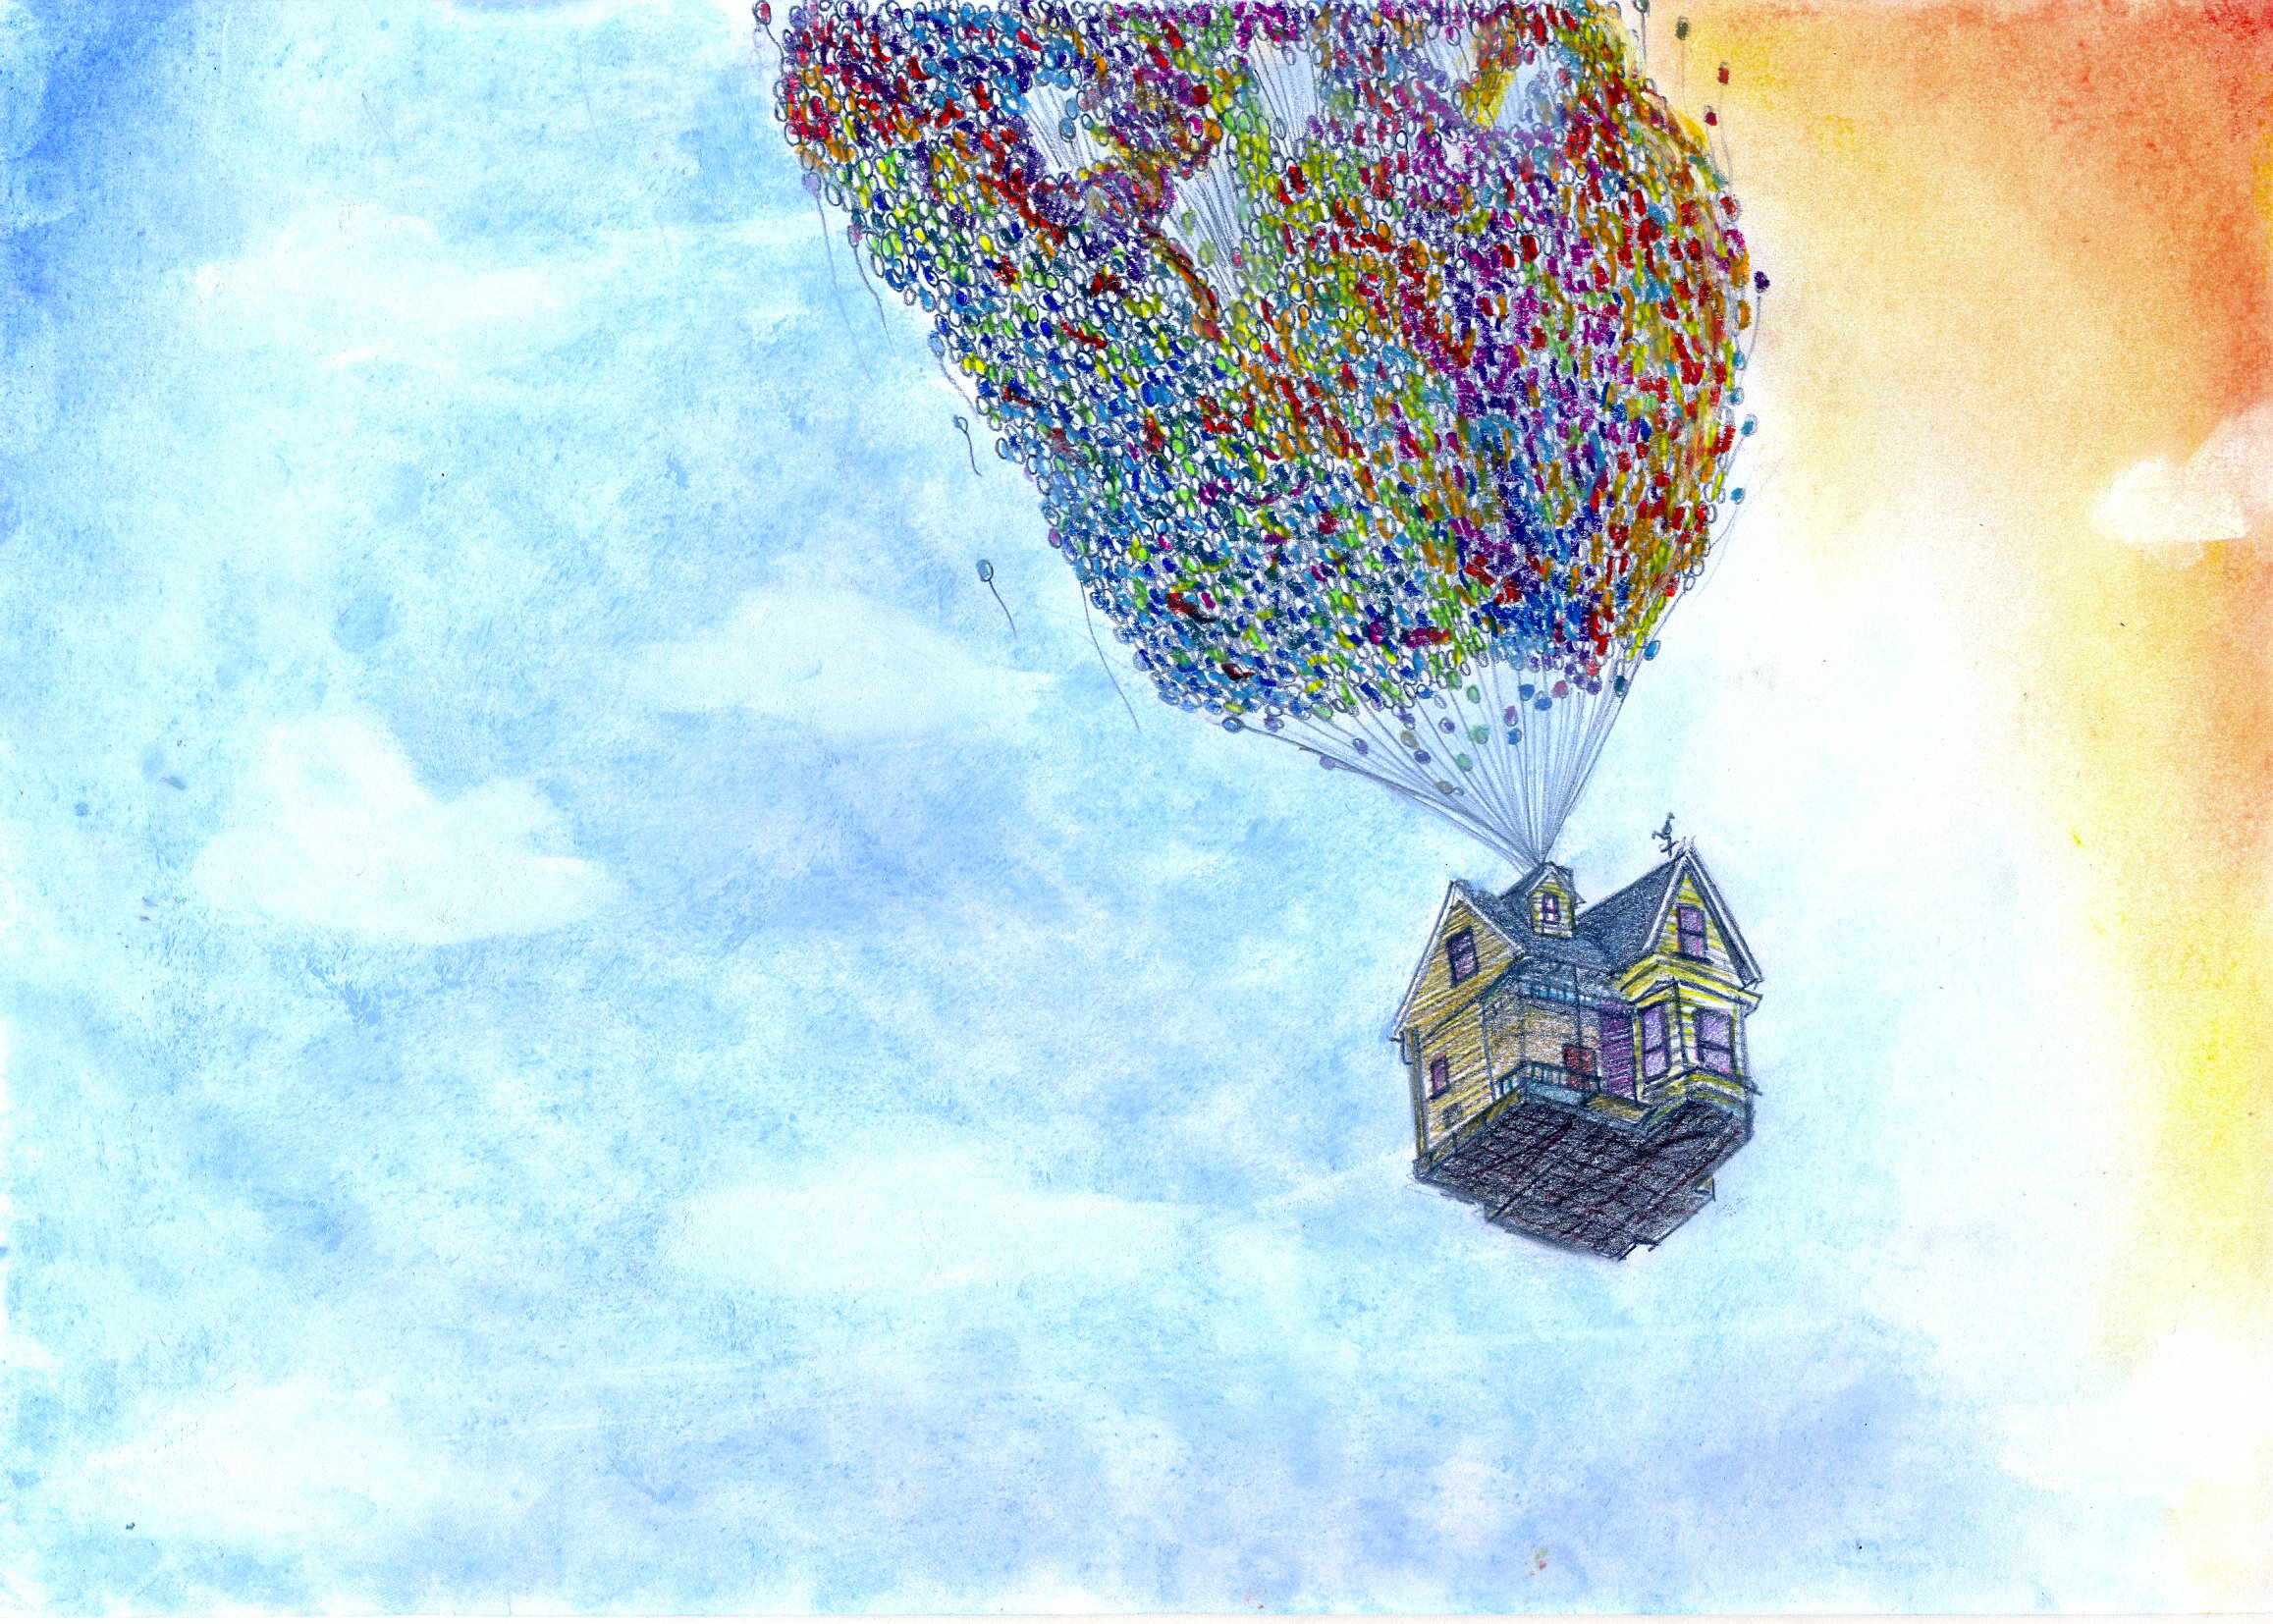 Летающий шарик дома. Домик на воздушных шариках. Обои с воздушными шарами. Летающий дом. Воздушный шар вверх.